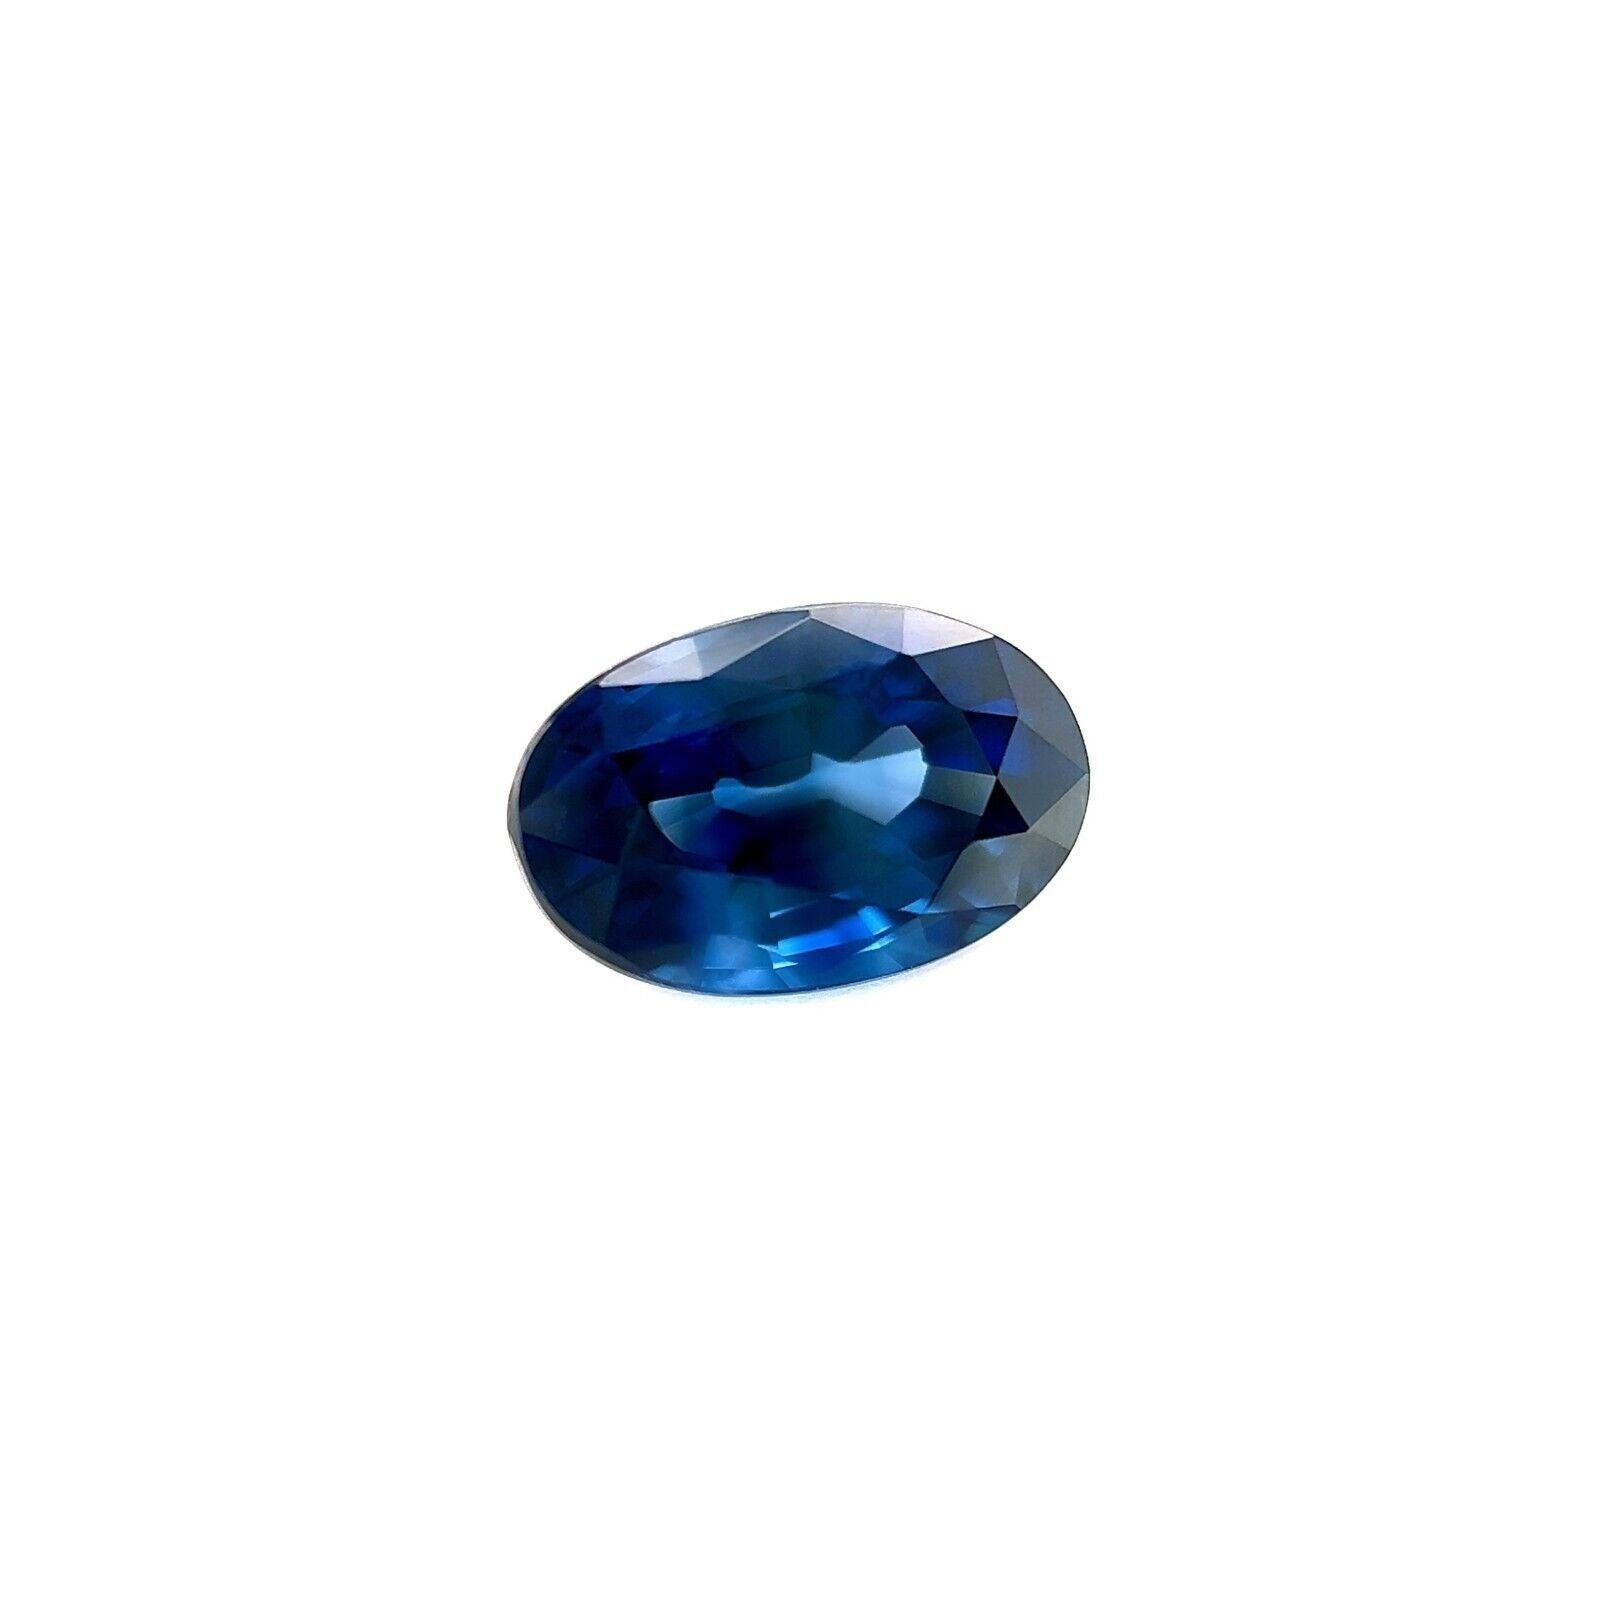 1.56ct Ceylon Saphir Königsblau Oval Schliff Natürlicher Edelstein 8X5.3mm VS

Natürlicher tief königsblauer Ceylon-Saphir Edelstein.
1,56 Karat mit einer schönen, tief königsblauen Farbe und ausgezeichneter Reinheit. VS.
Außerdem hat er einen